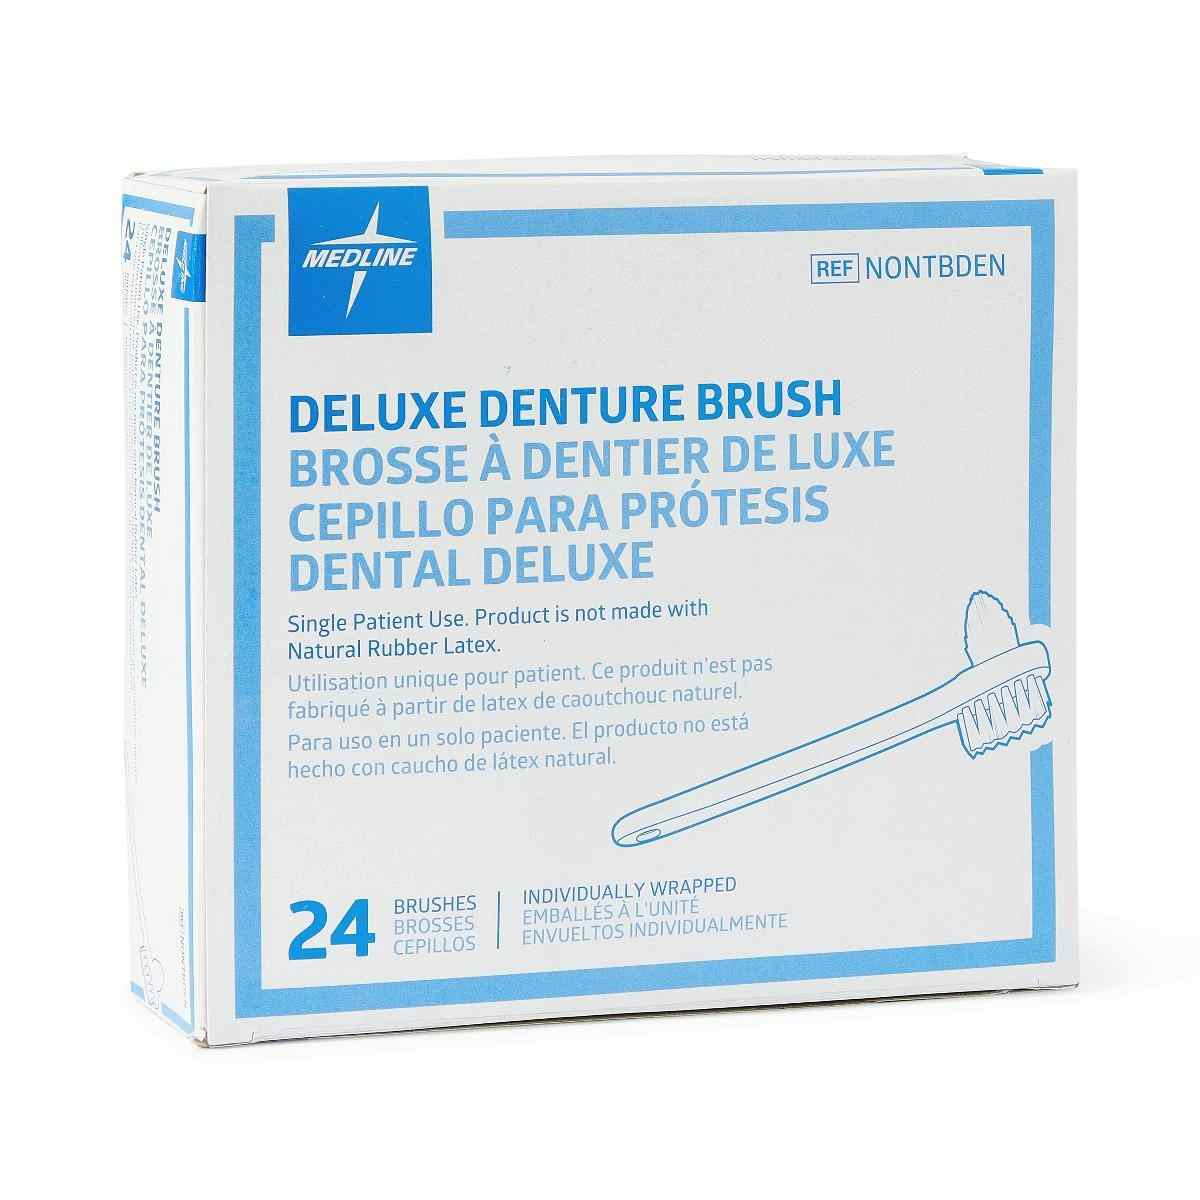 Medline 2-Sided Deluxe Denture Brushes, NONTBDEN, Case of 144